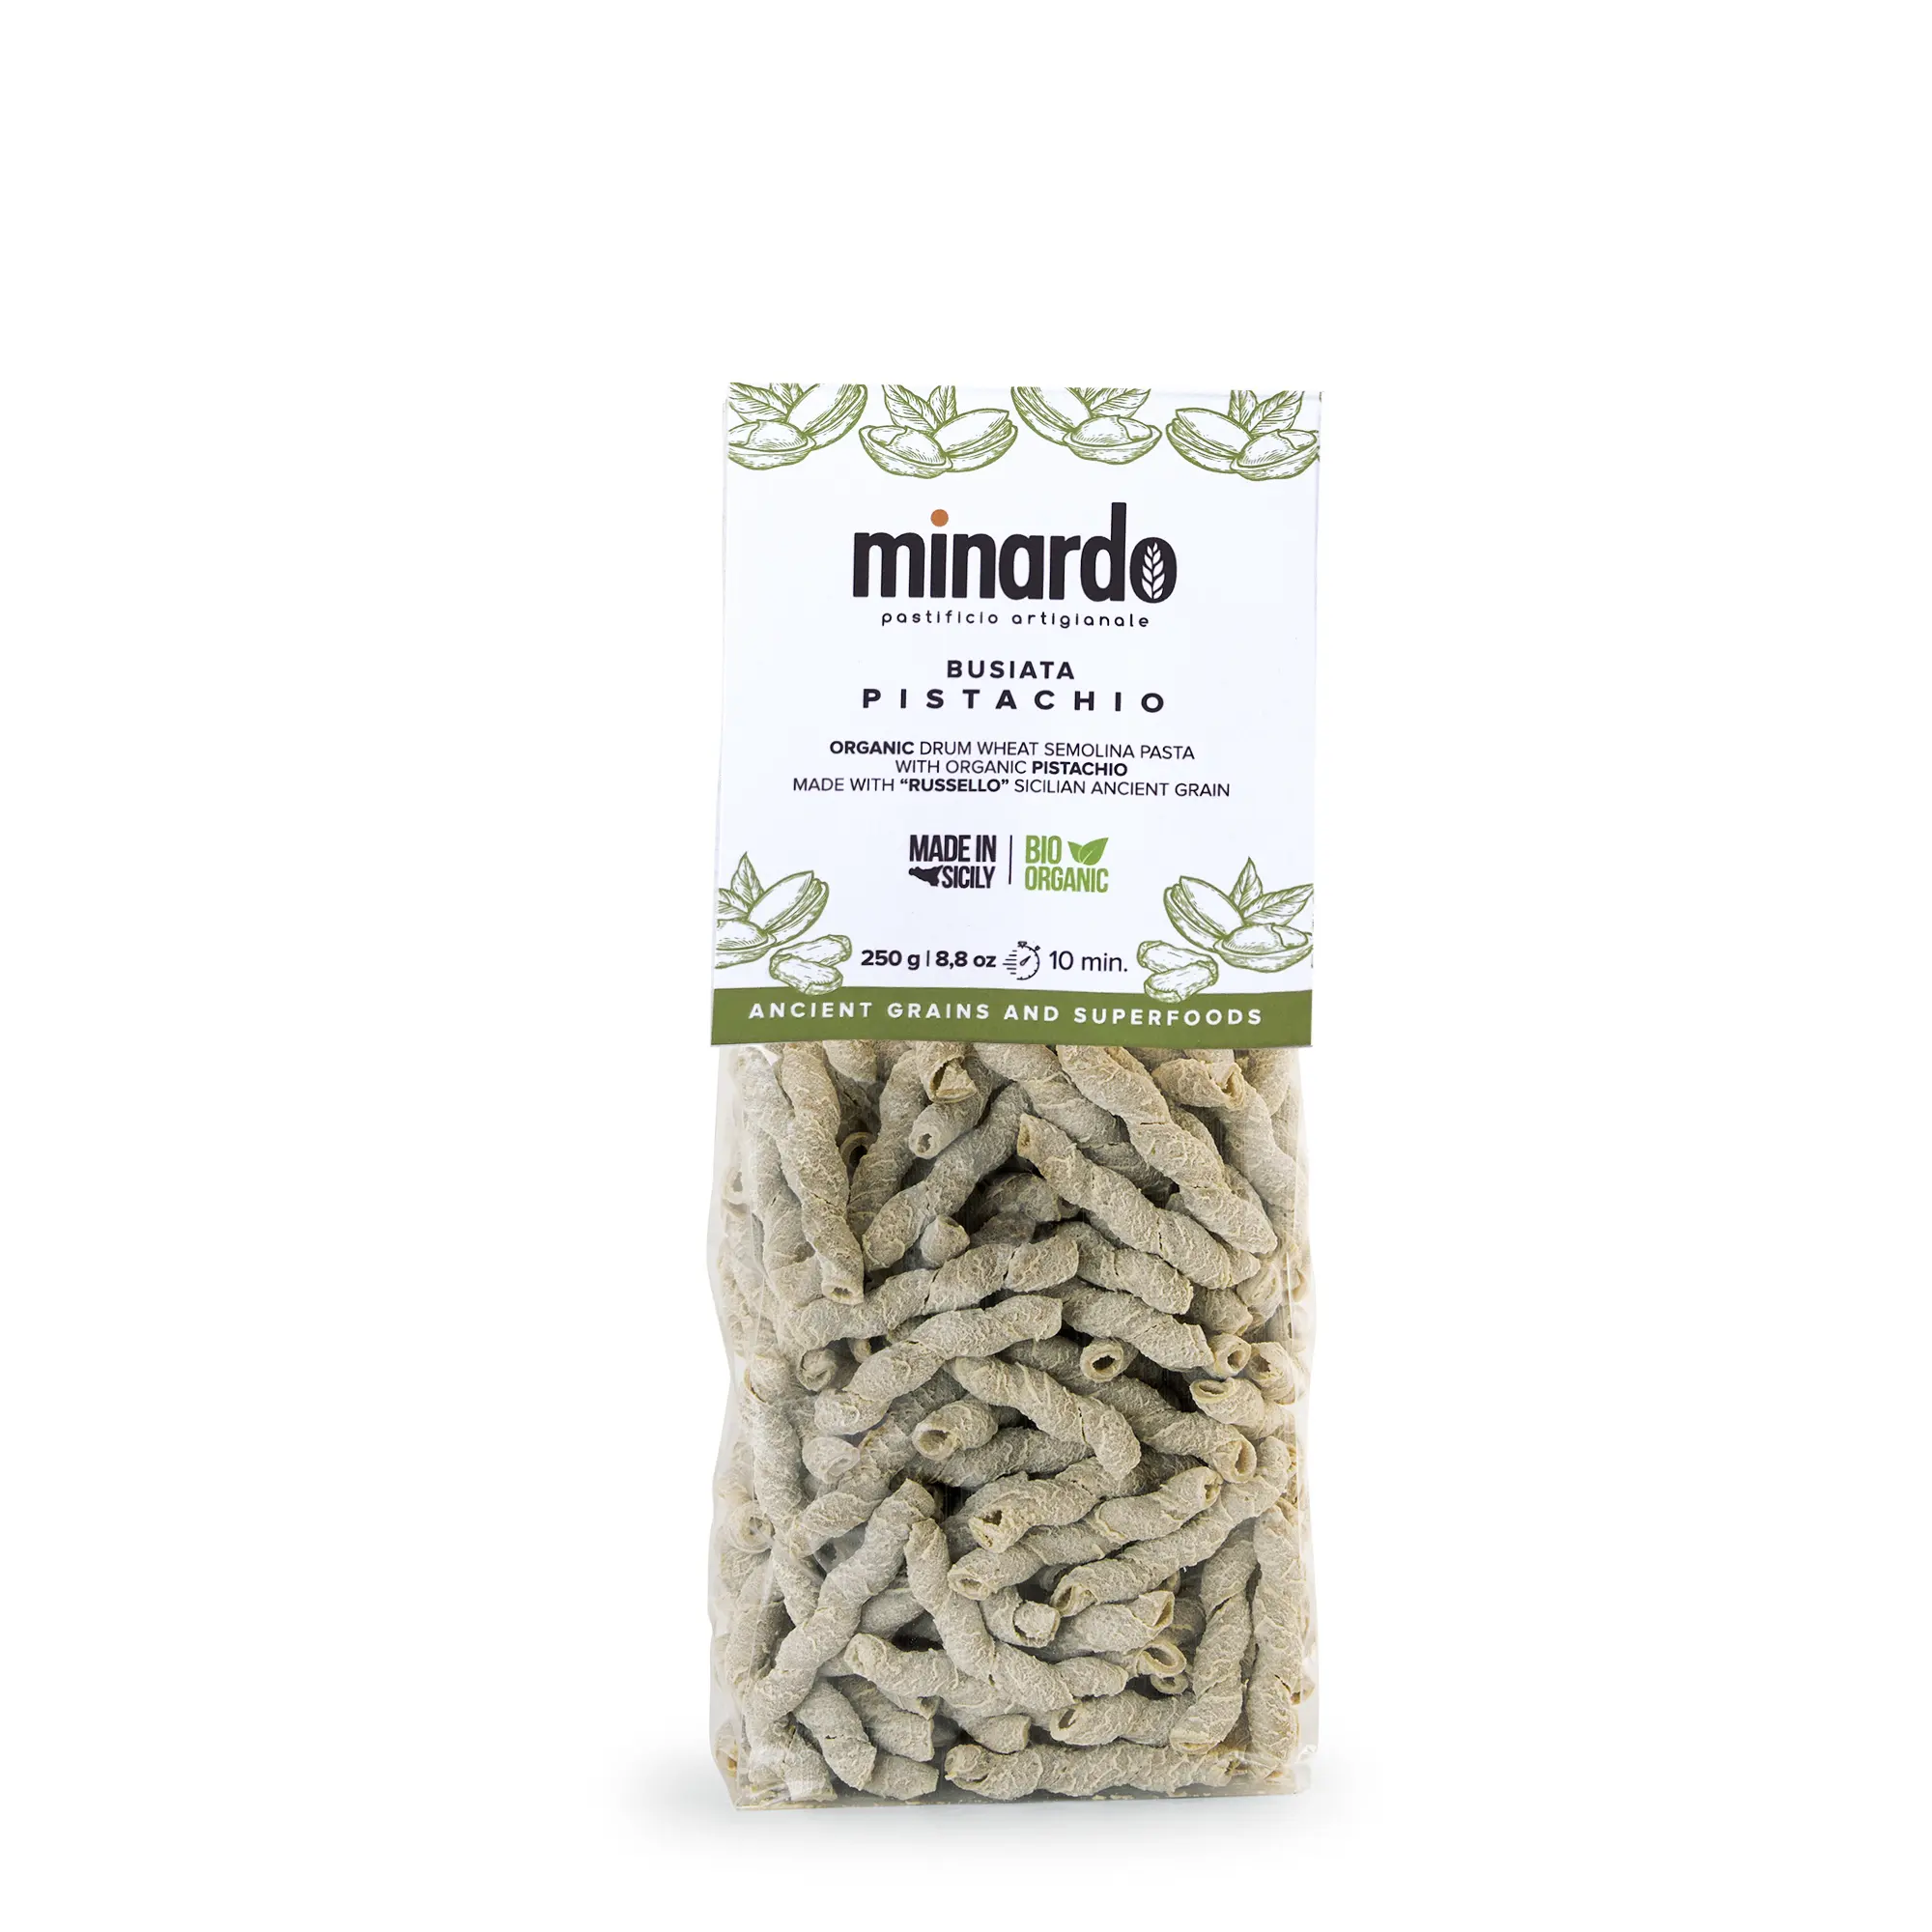 Busiata pistacchio органические макароны из твердых сортов пшеницы органические макароны, сделанные в Италии для магазинов медицины и ресторанов